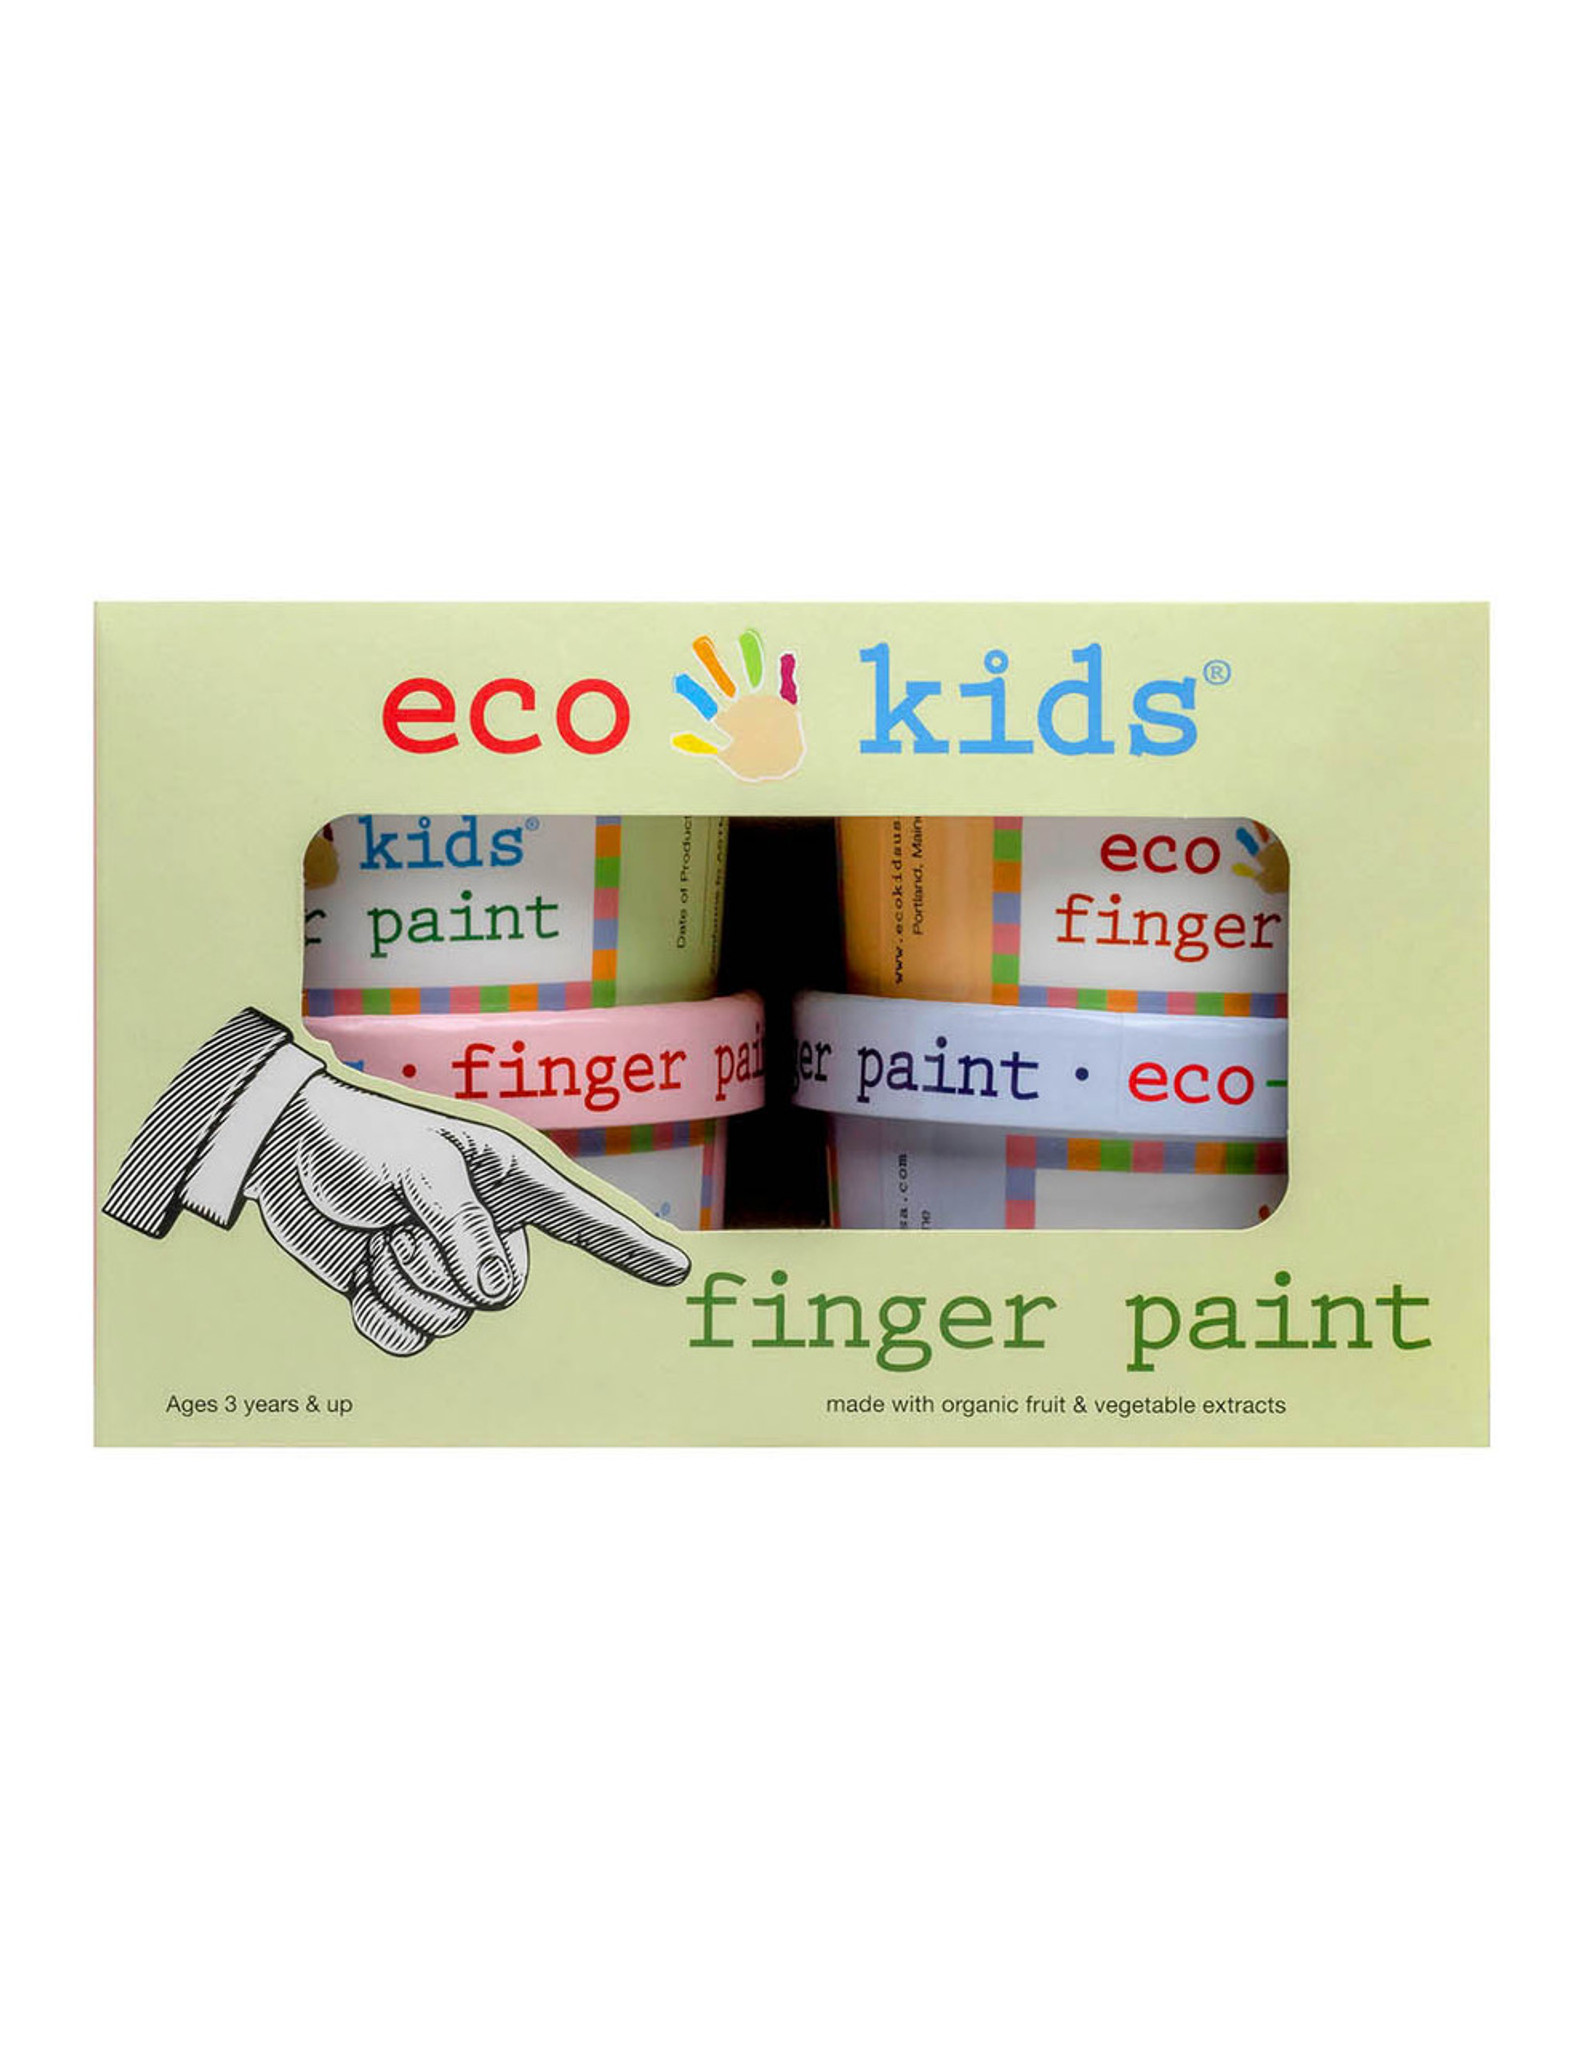 iMustech Washable Finger Paint, Non Toxic Kids Fingerpaints For